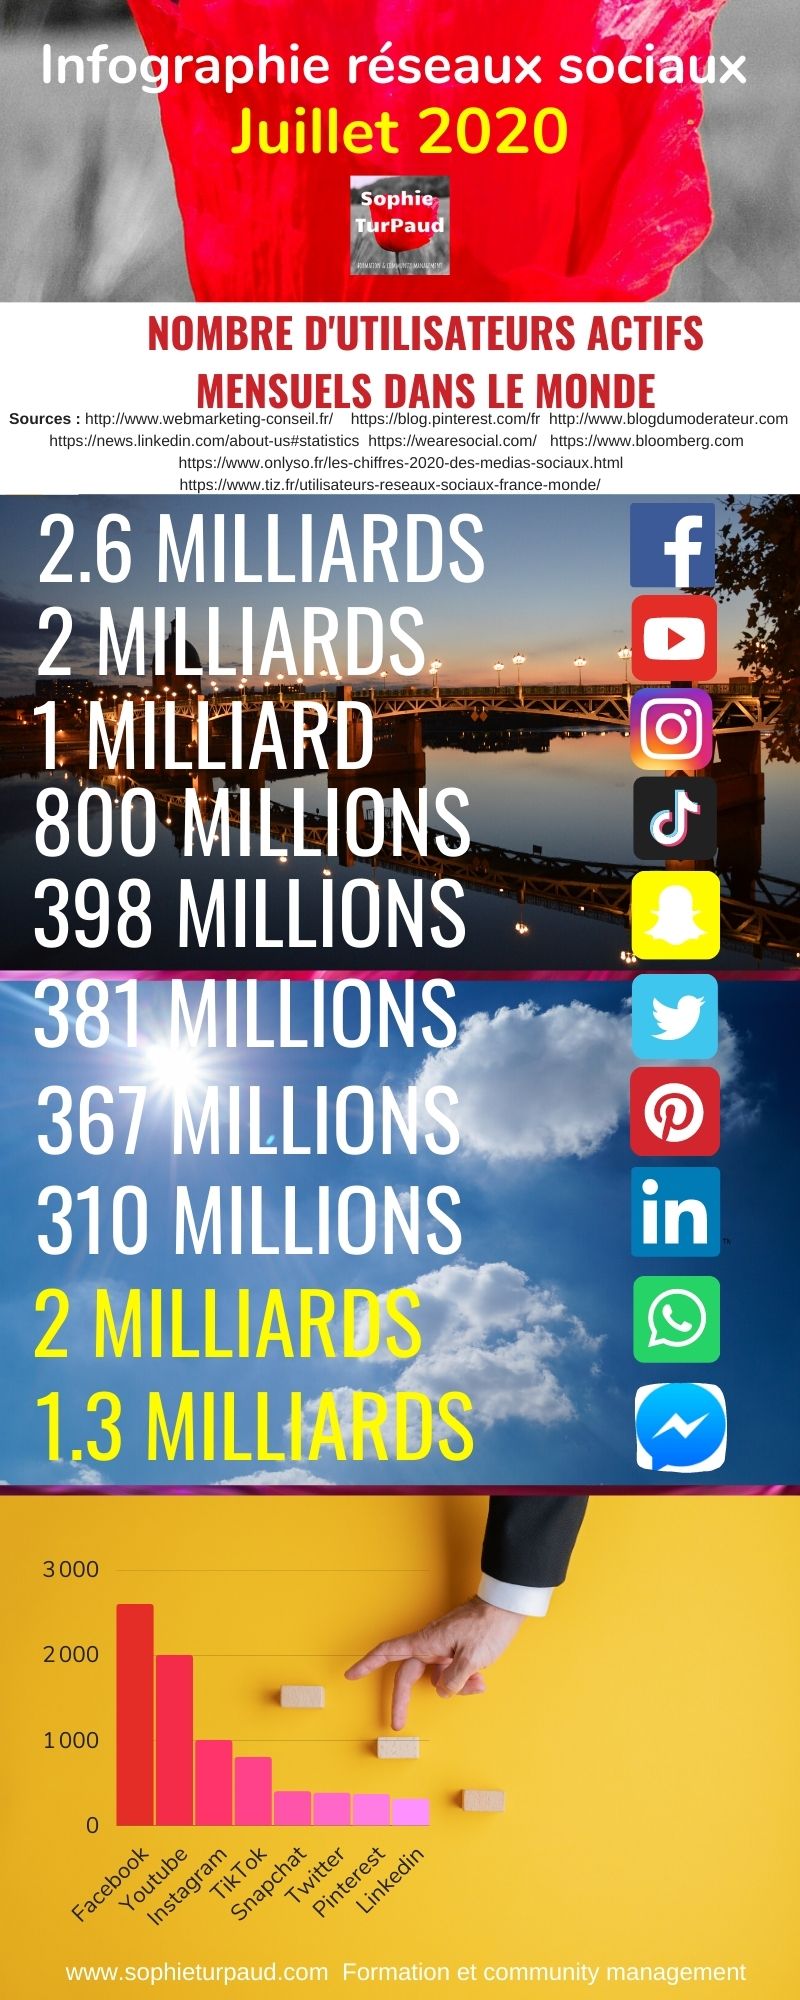 Infographie chiffres réseaux sociaux 2020 via @sophieturpaud